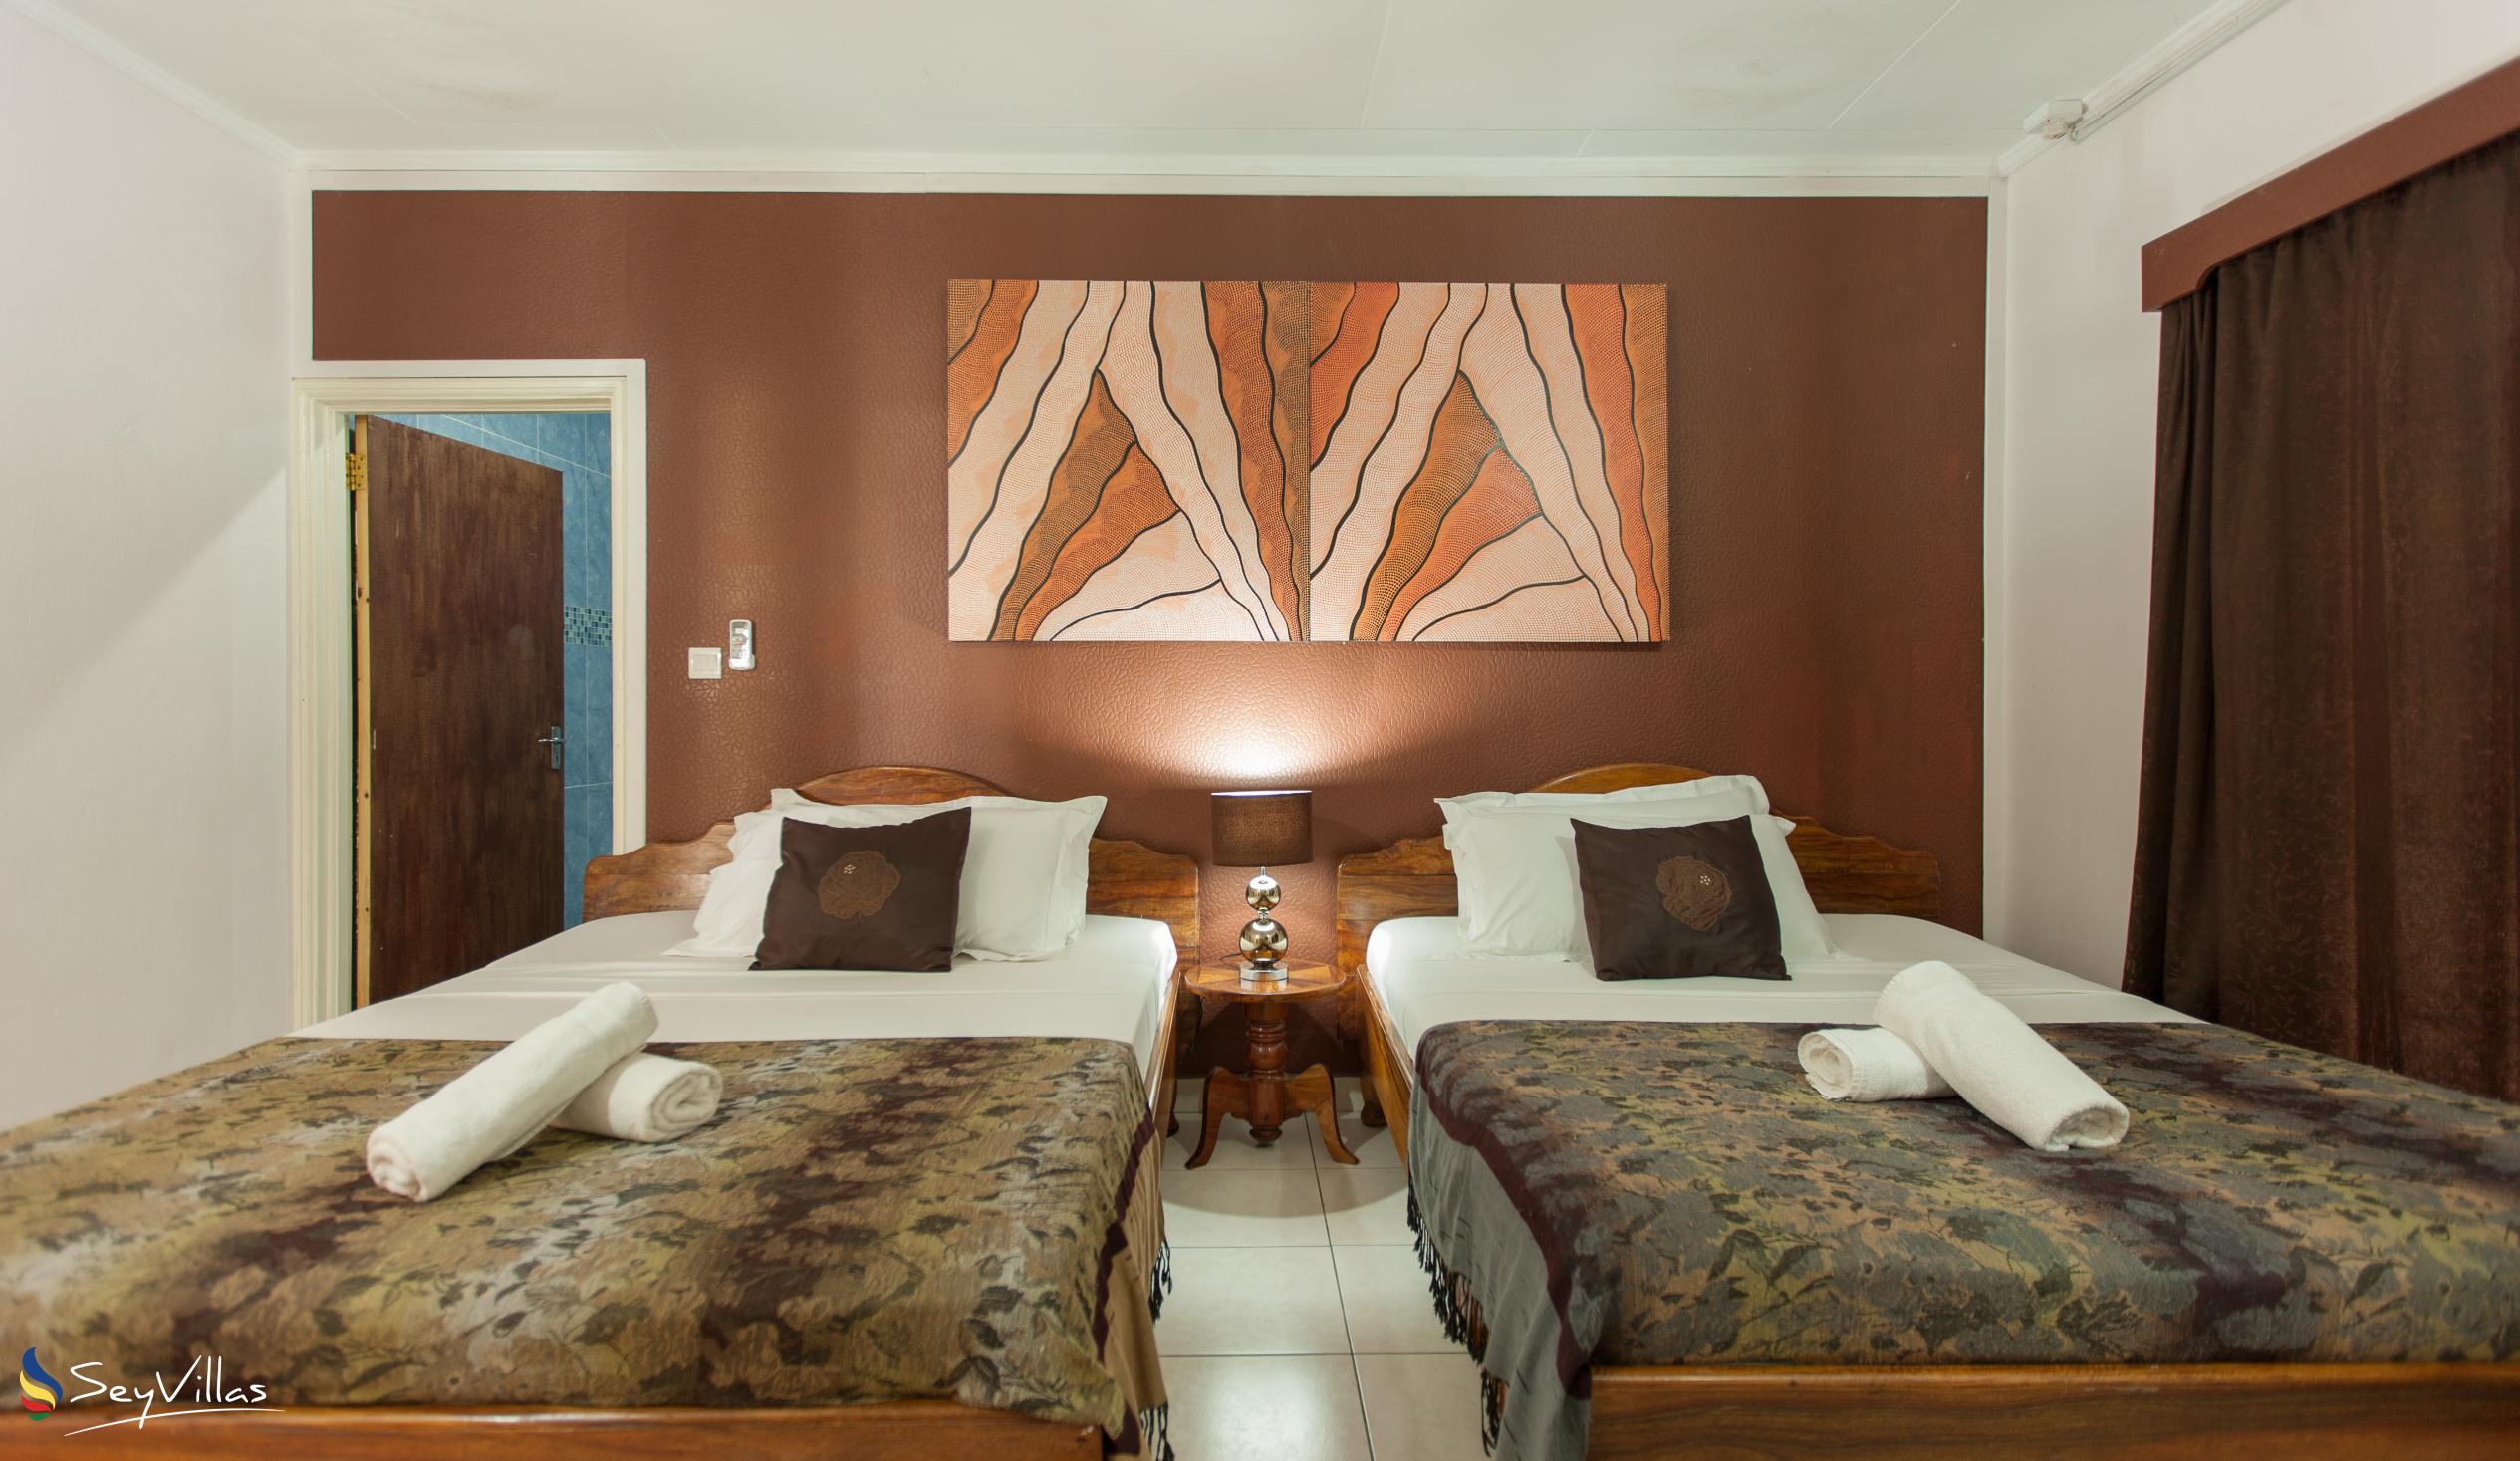 Photo 35: Villa Authentique - Quadruple Room - La Digue (Seychelles)